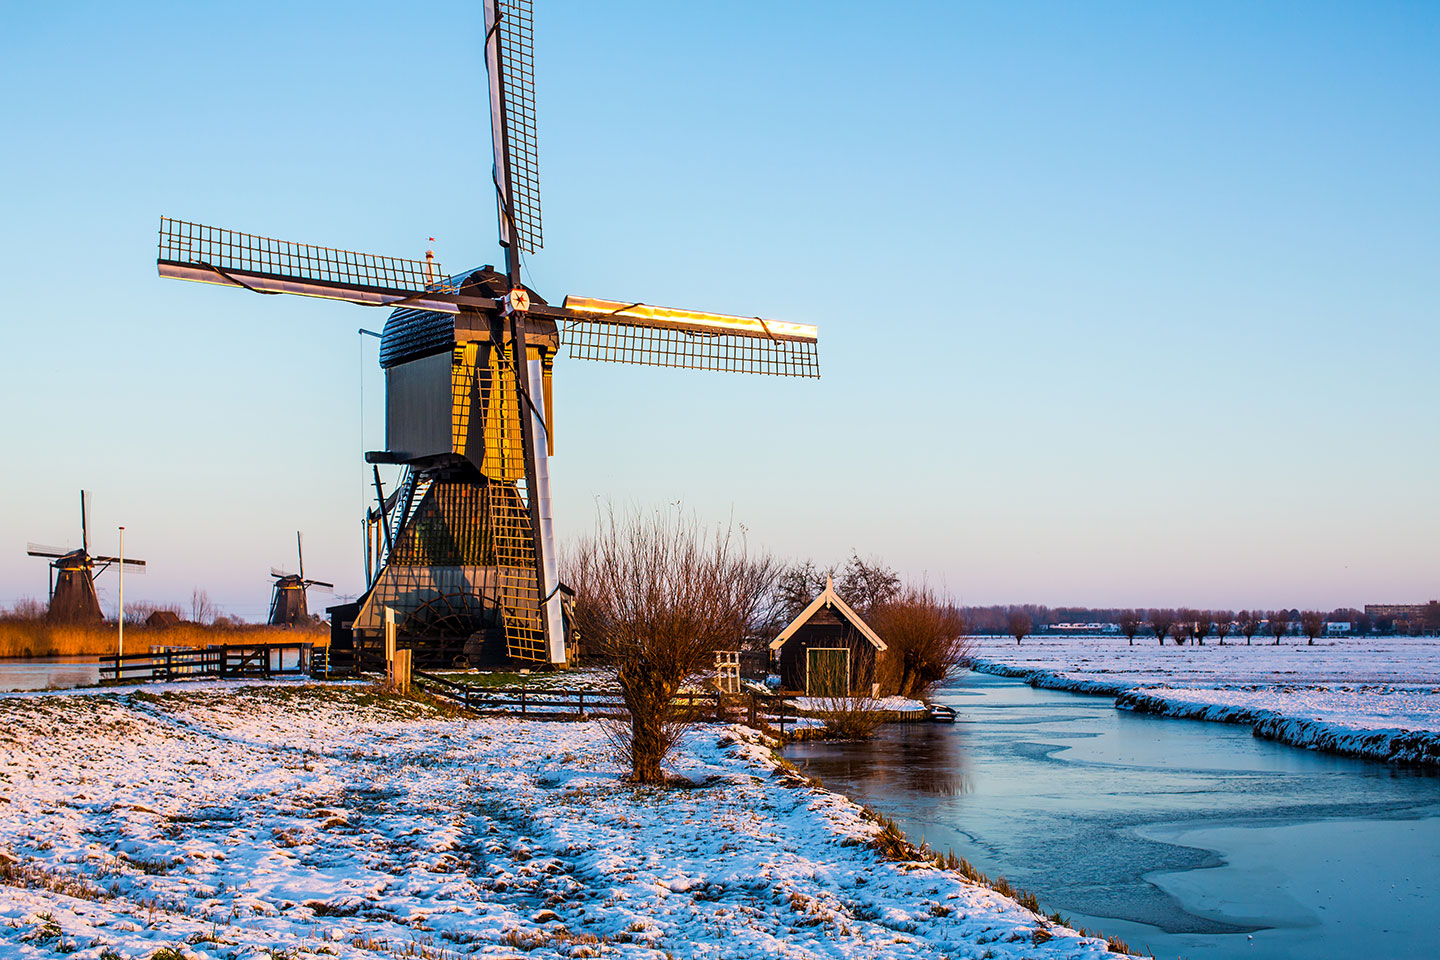 Kinderdijk windmills in the Netherlands